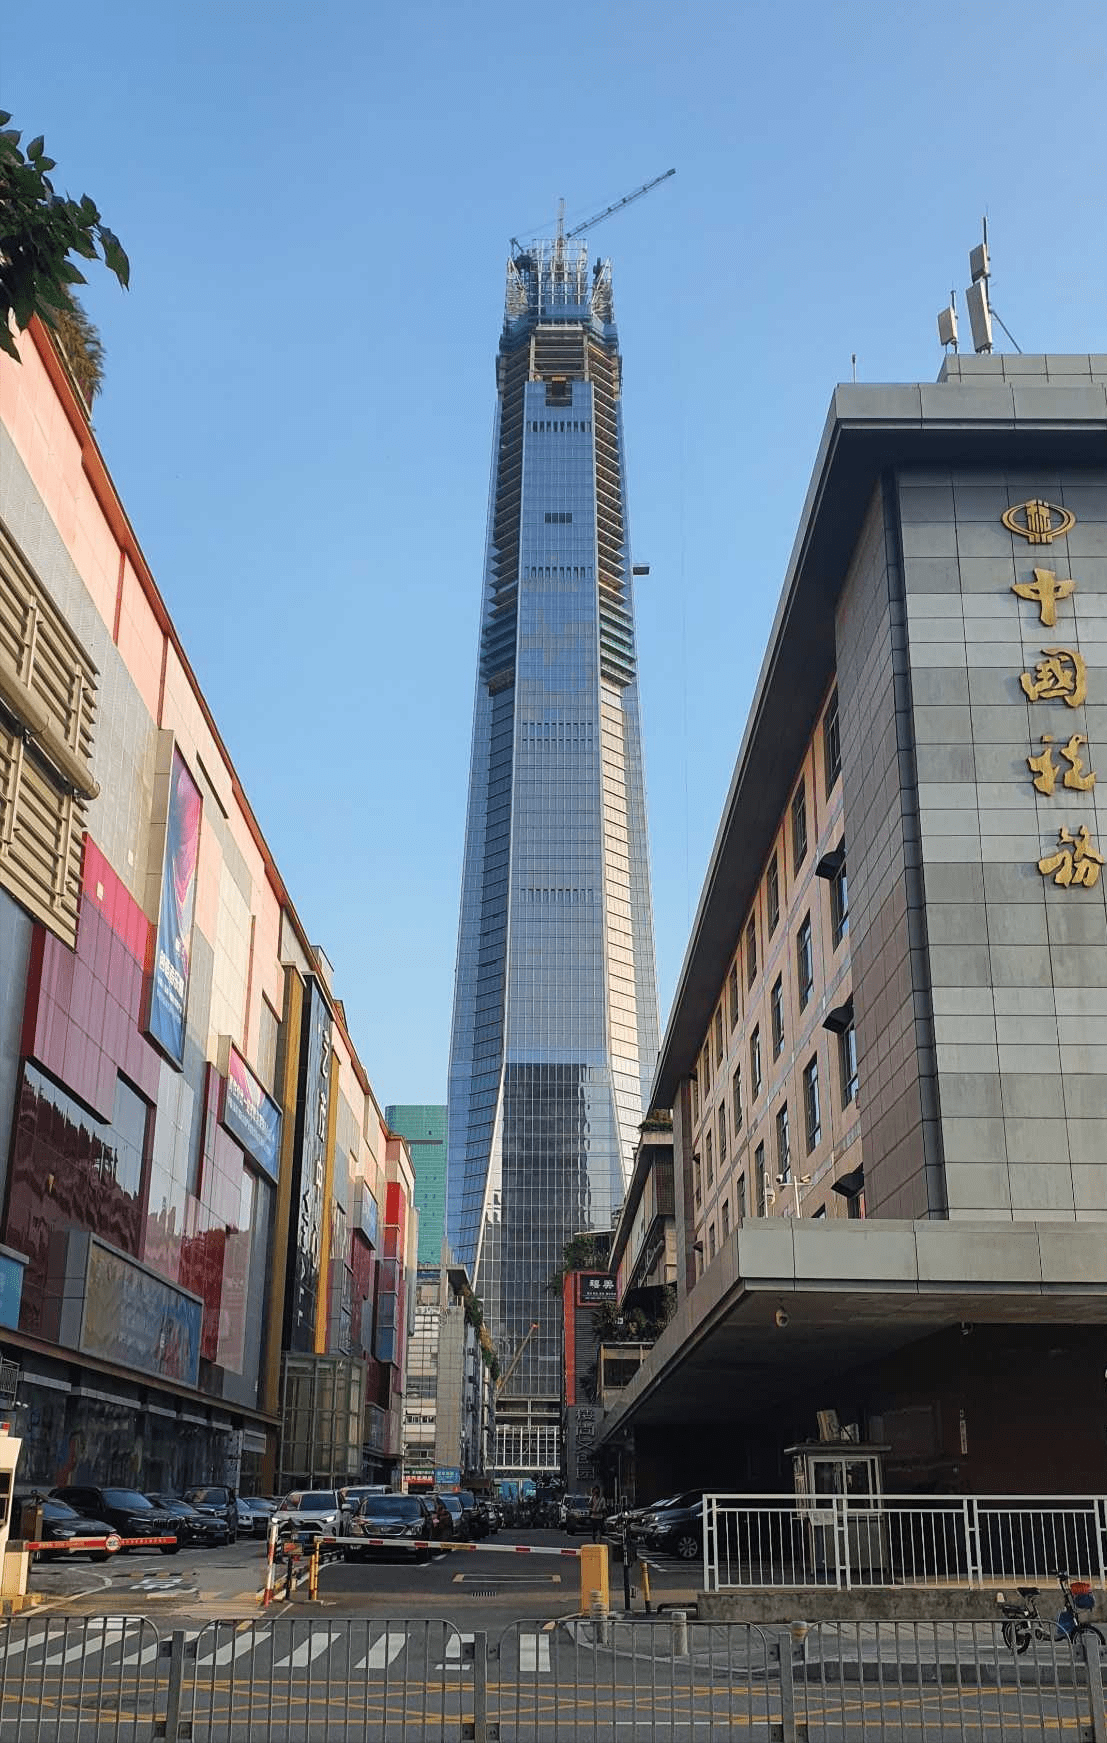 高388米!深圳在建最高摩天楼——城脉金融中心,预计年内竣工